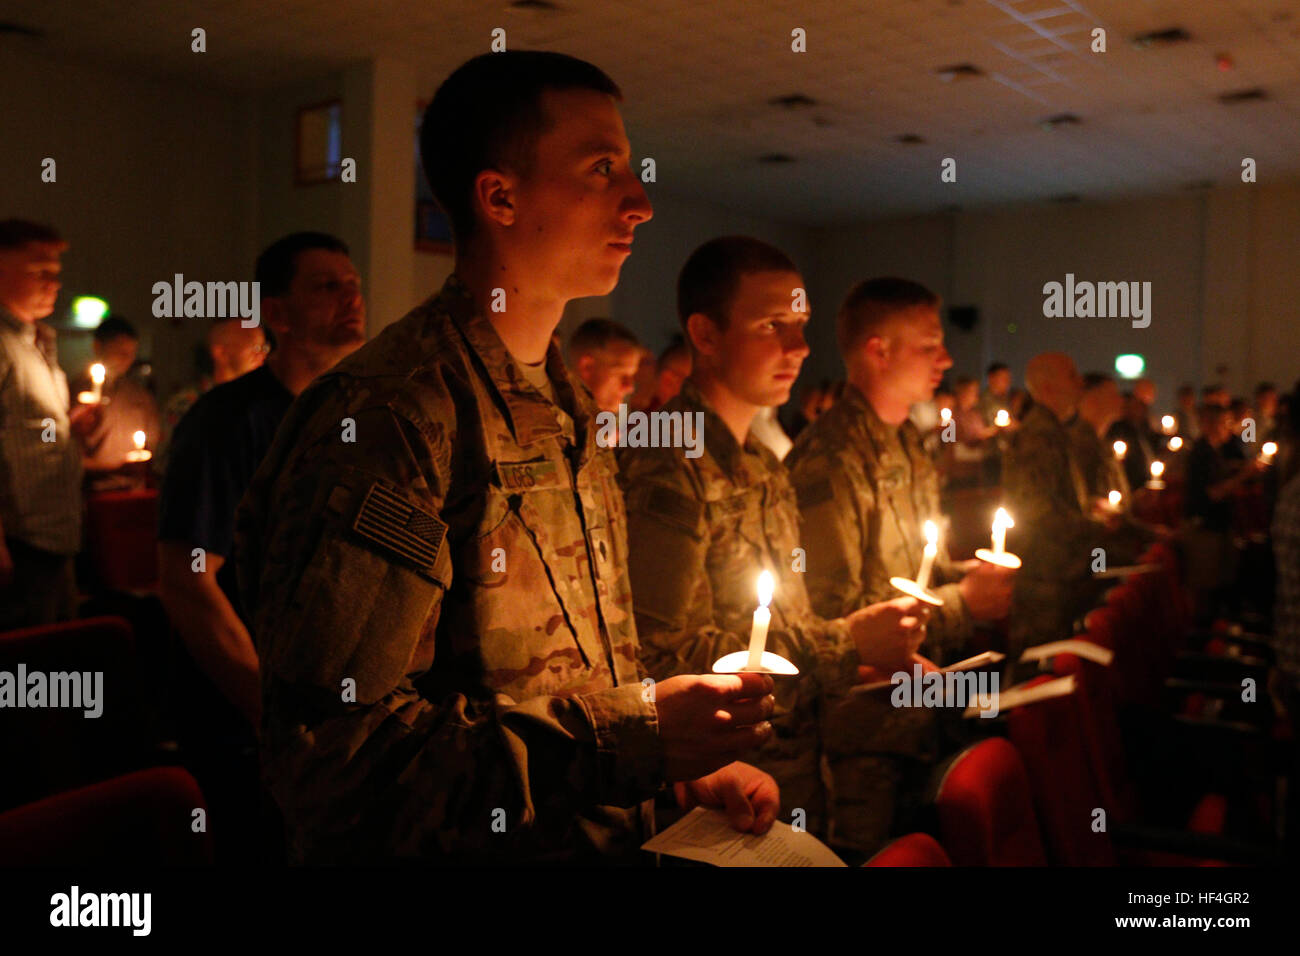 Des soldats américains participent à un service de bougies la veille de Noël au Camp Arifjan, 24 décembre 2016 au Koweït. Banque D'Images